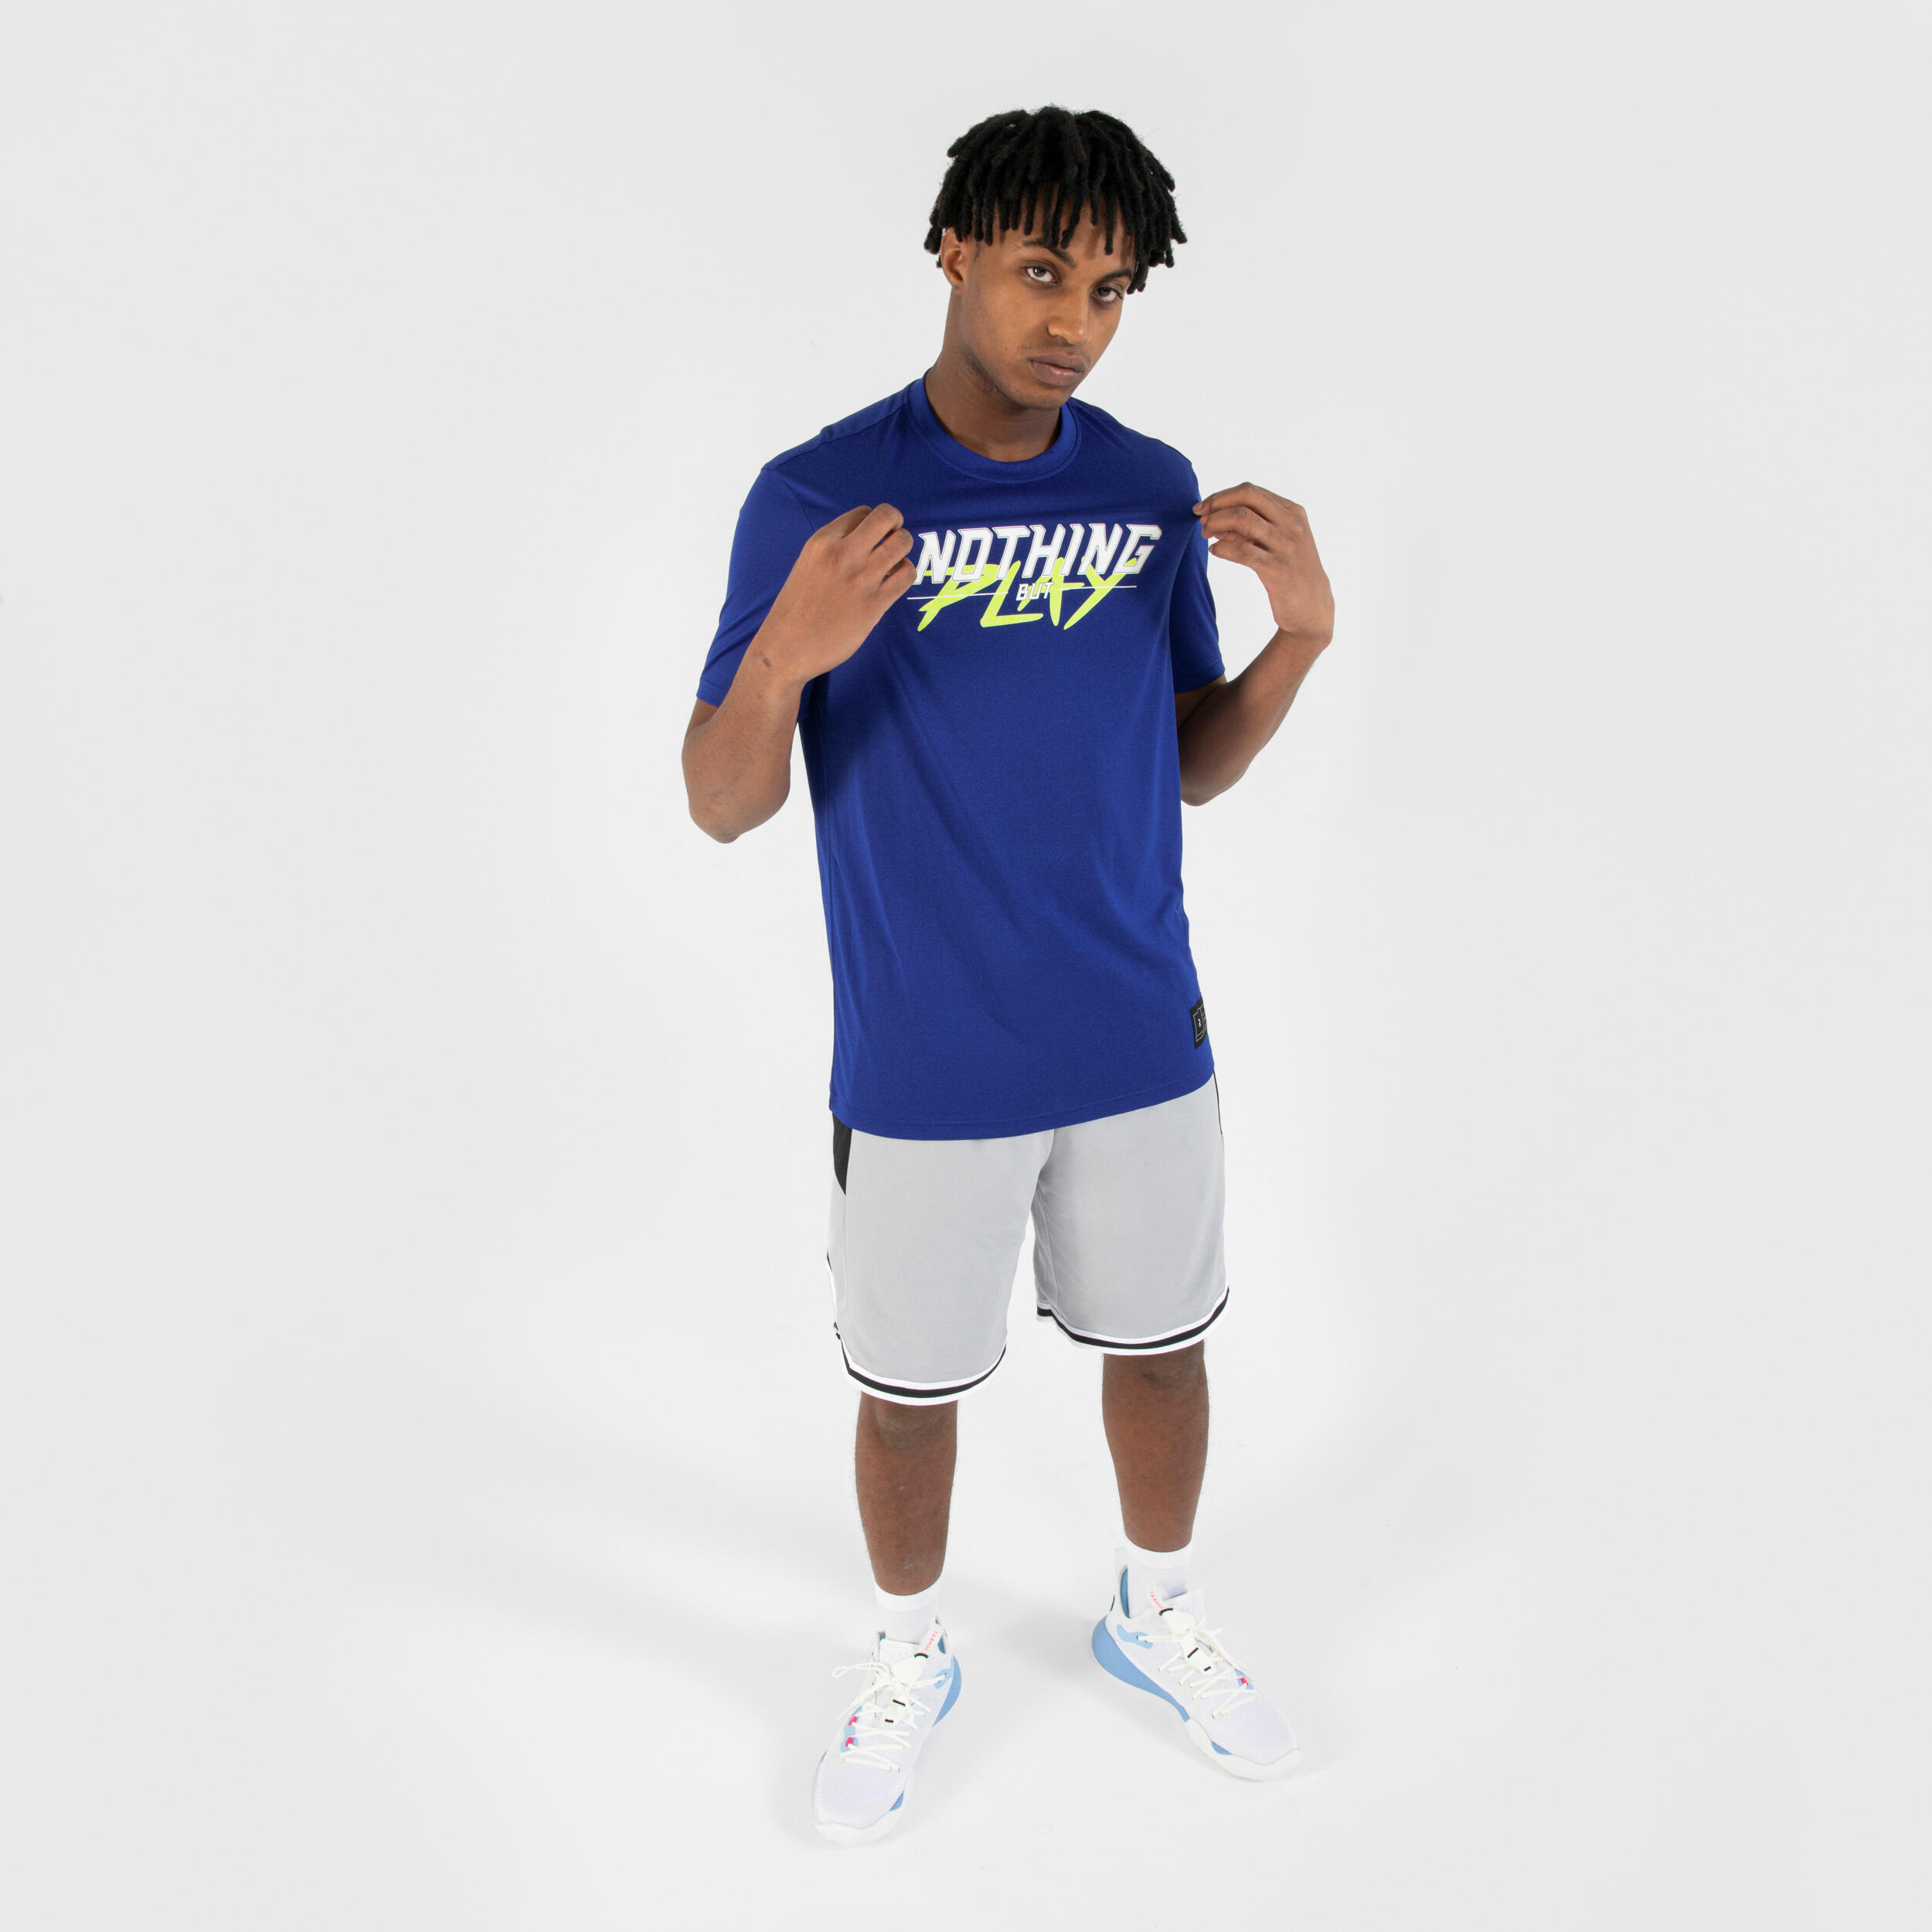 Men's/Women's Basketball T-Shirt/Jersey TS500 Fast - Blue 4/7